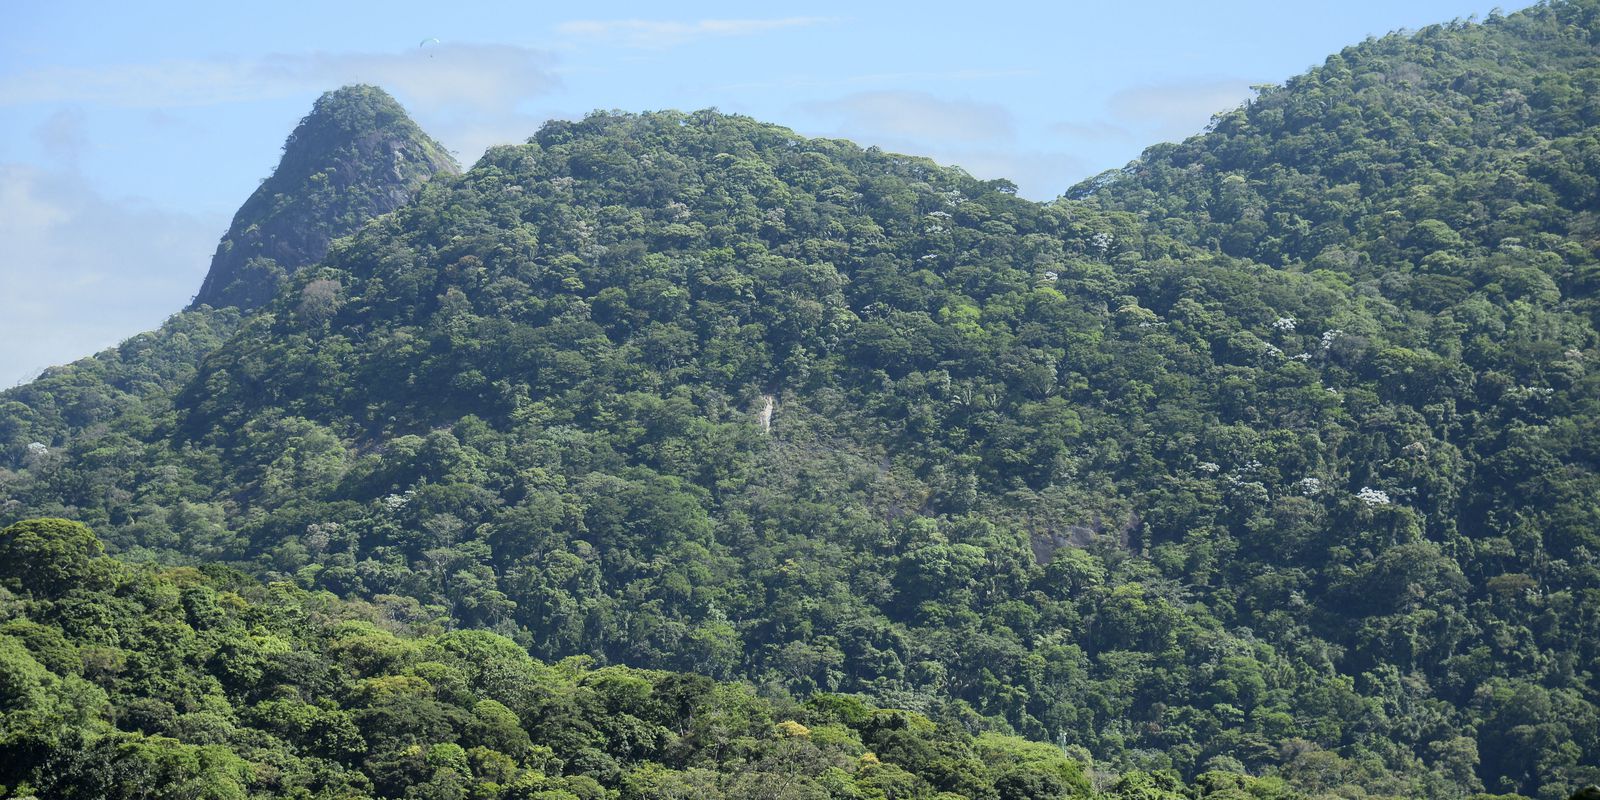 Fiocruz project will restore the Atlantic Forest area in Rio